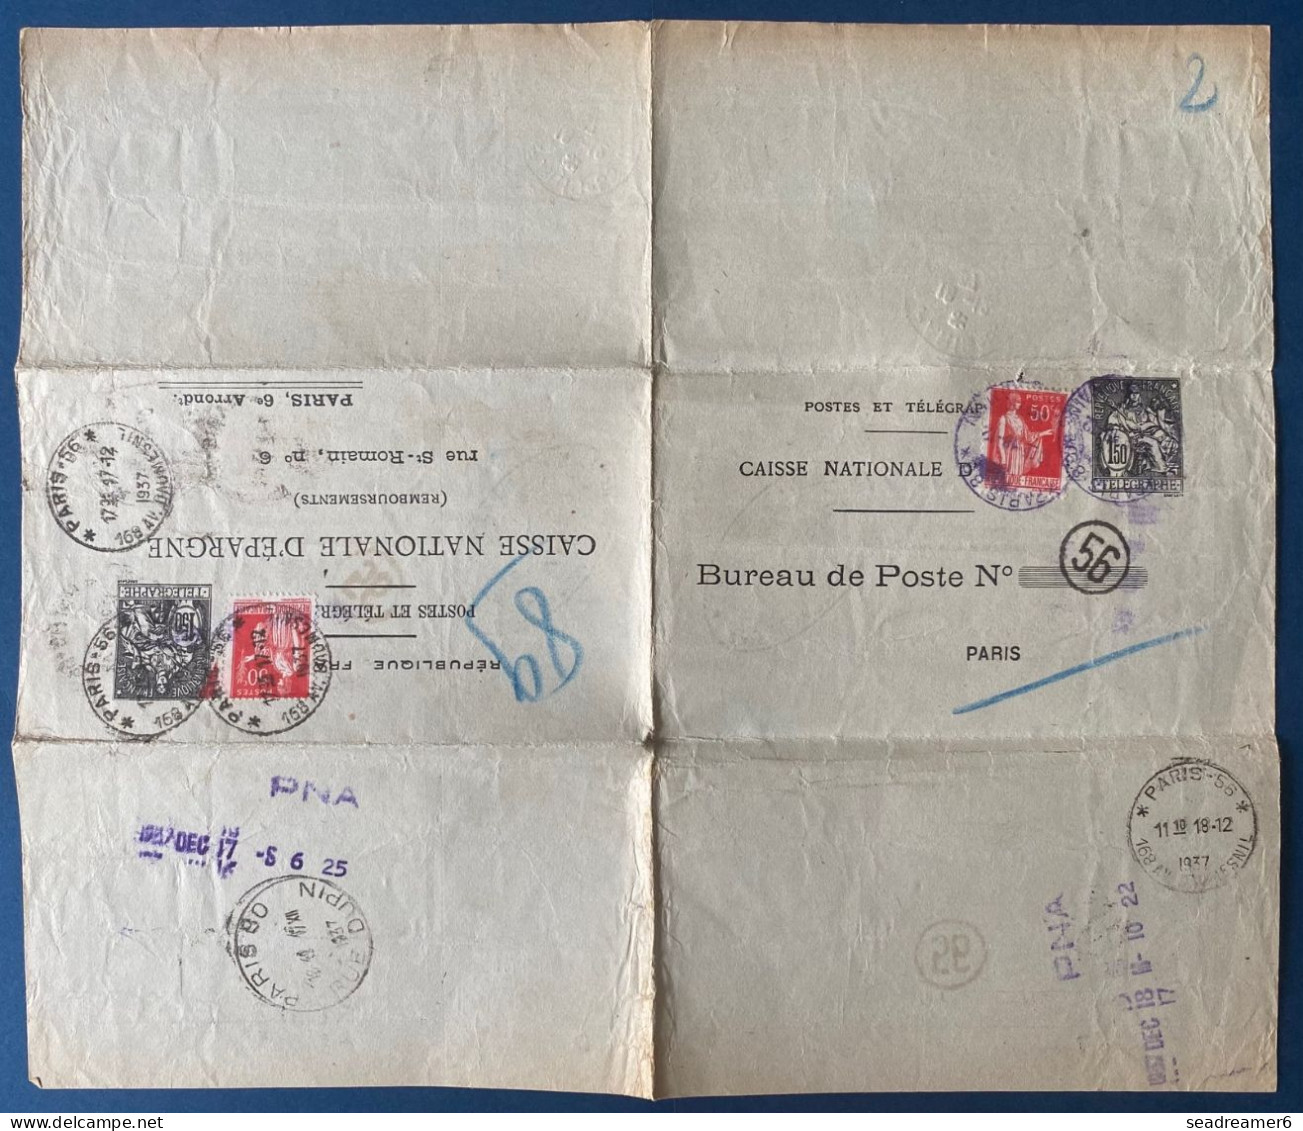 France 1937 Entier Postal Chaplain 1.50 F Noir + 50 C Paix Rouge Format 278 X 238 Mm. CHA P4 TTB - Pneumatische Post